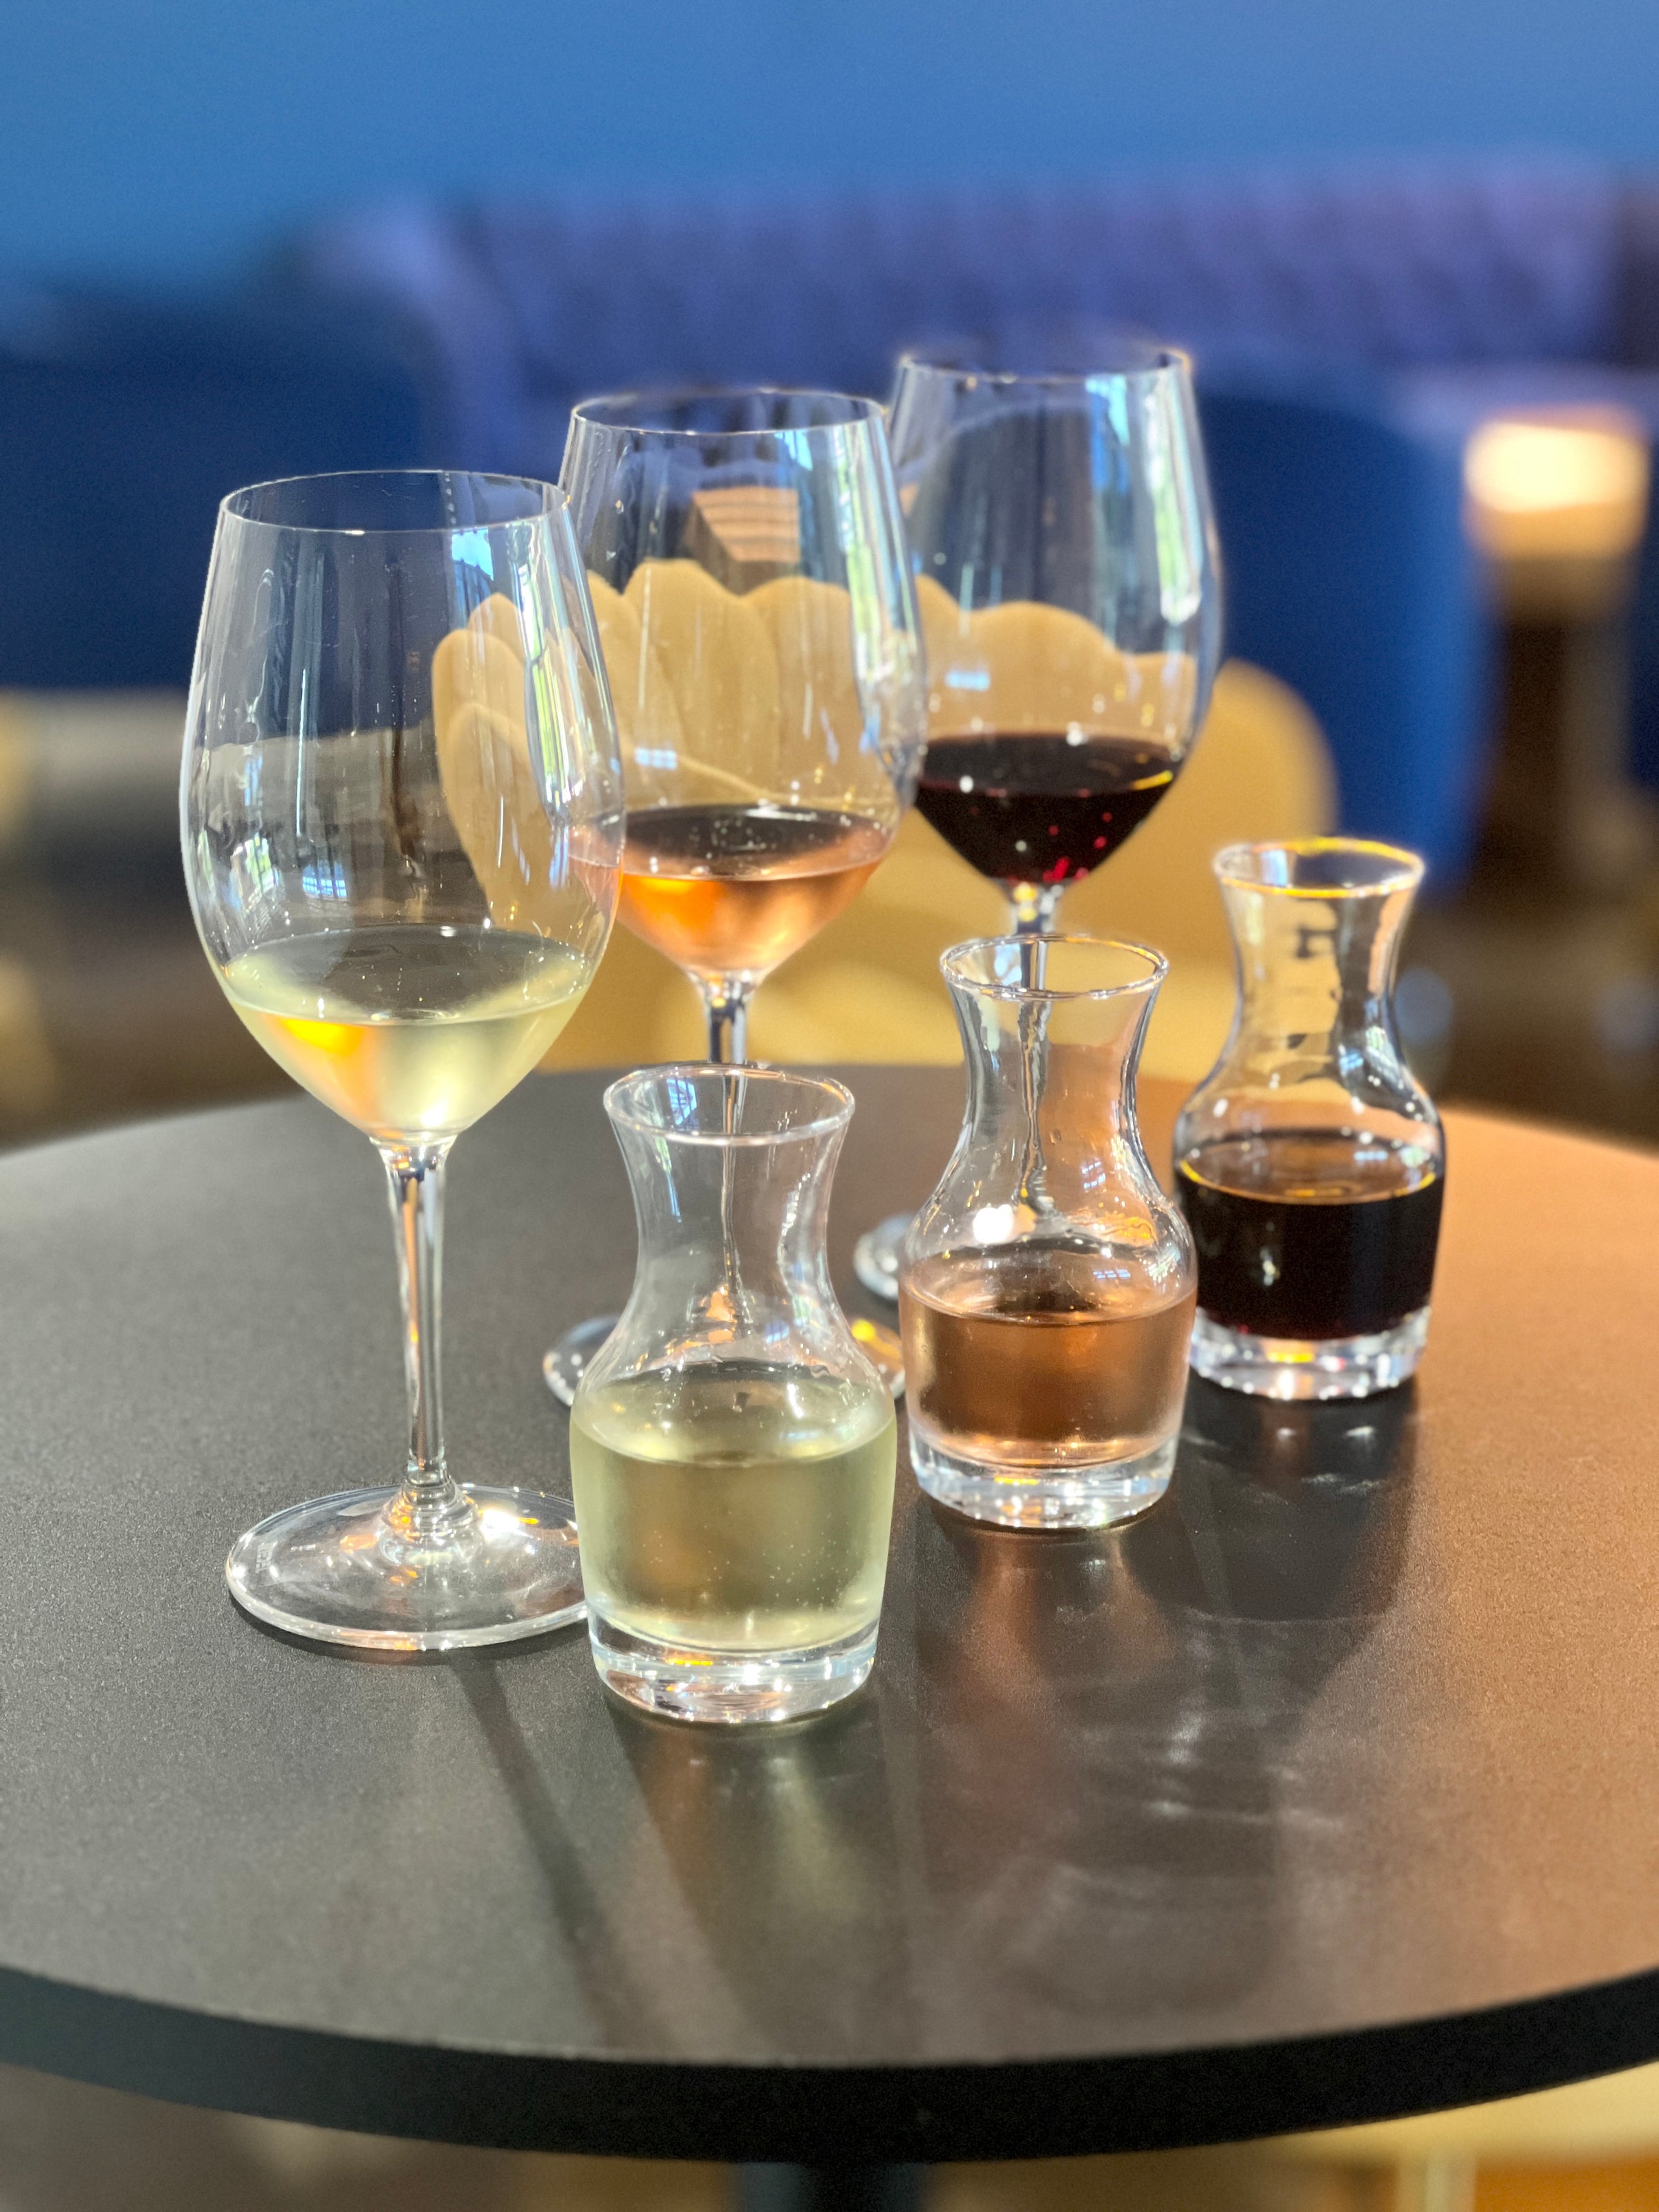 Wine Club — Acre Wines